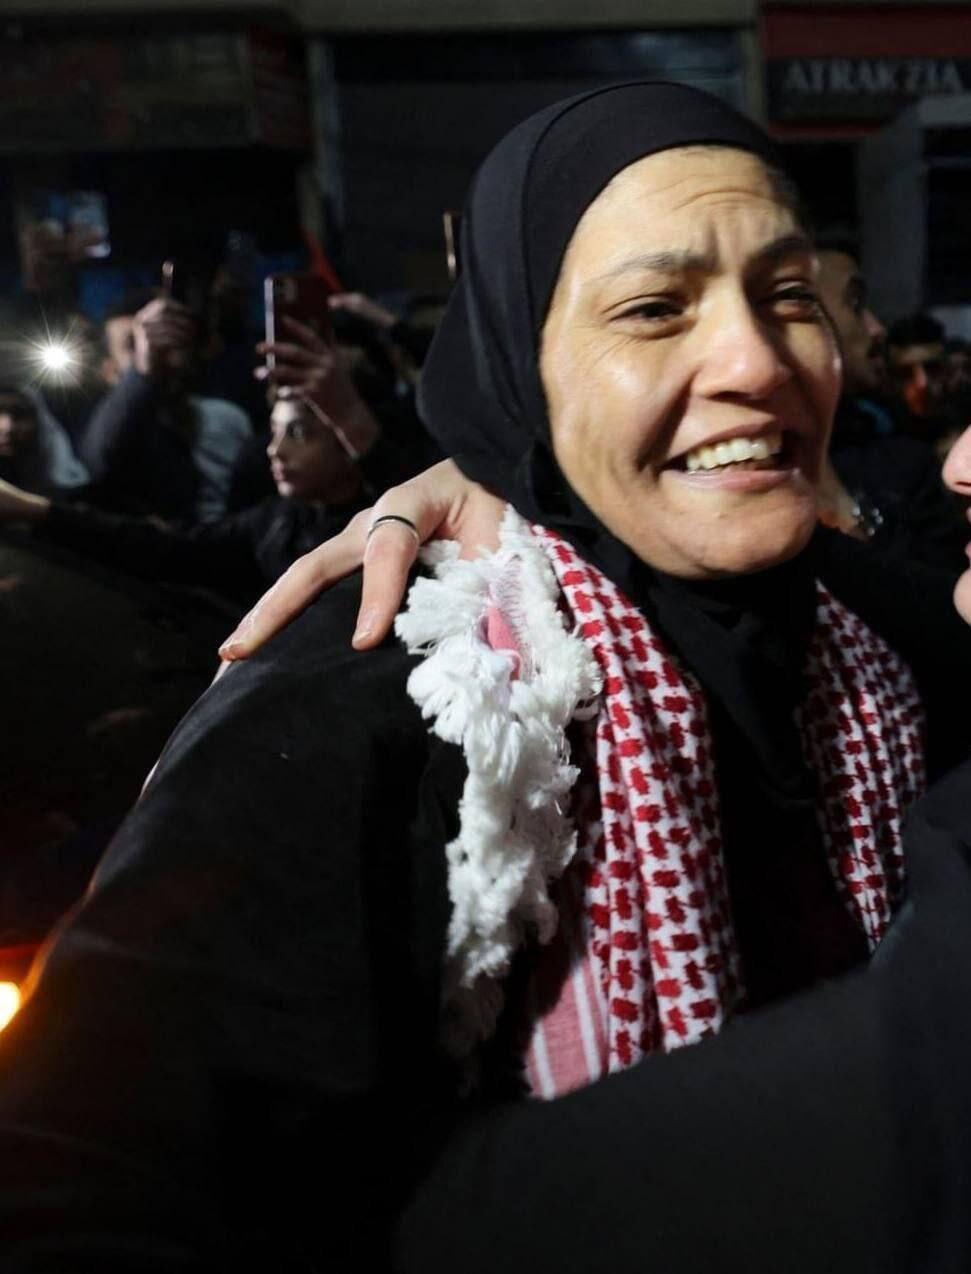 ראודה אבו עג'מיה אסירה שחרור שוחררה בית לחם חזית עממית אשמה הואשמה גיוס מחבלים